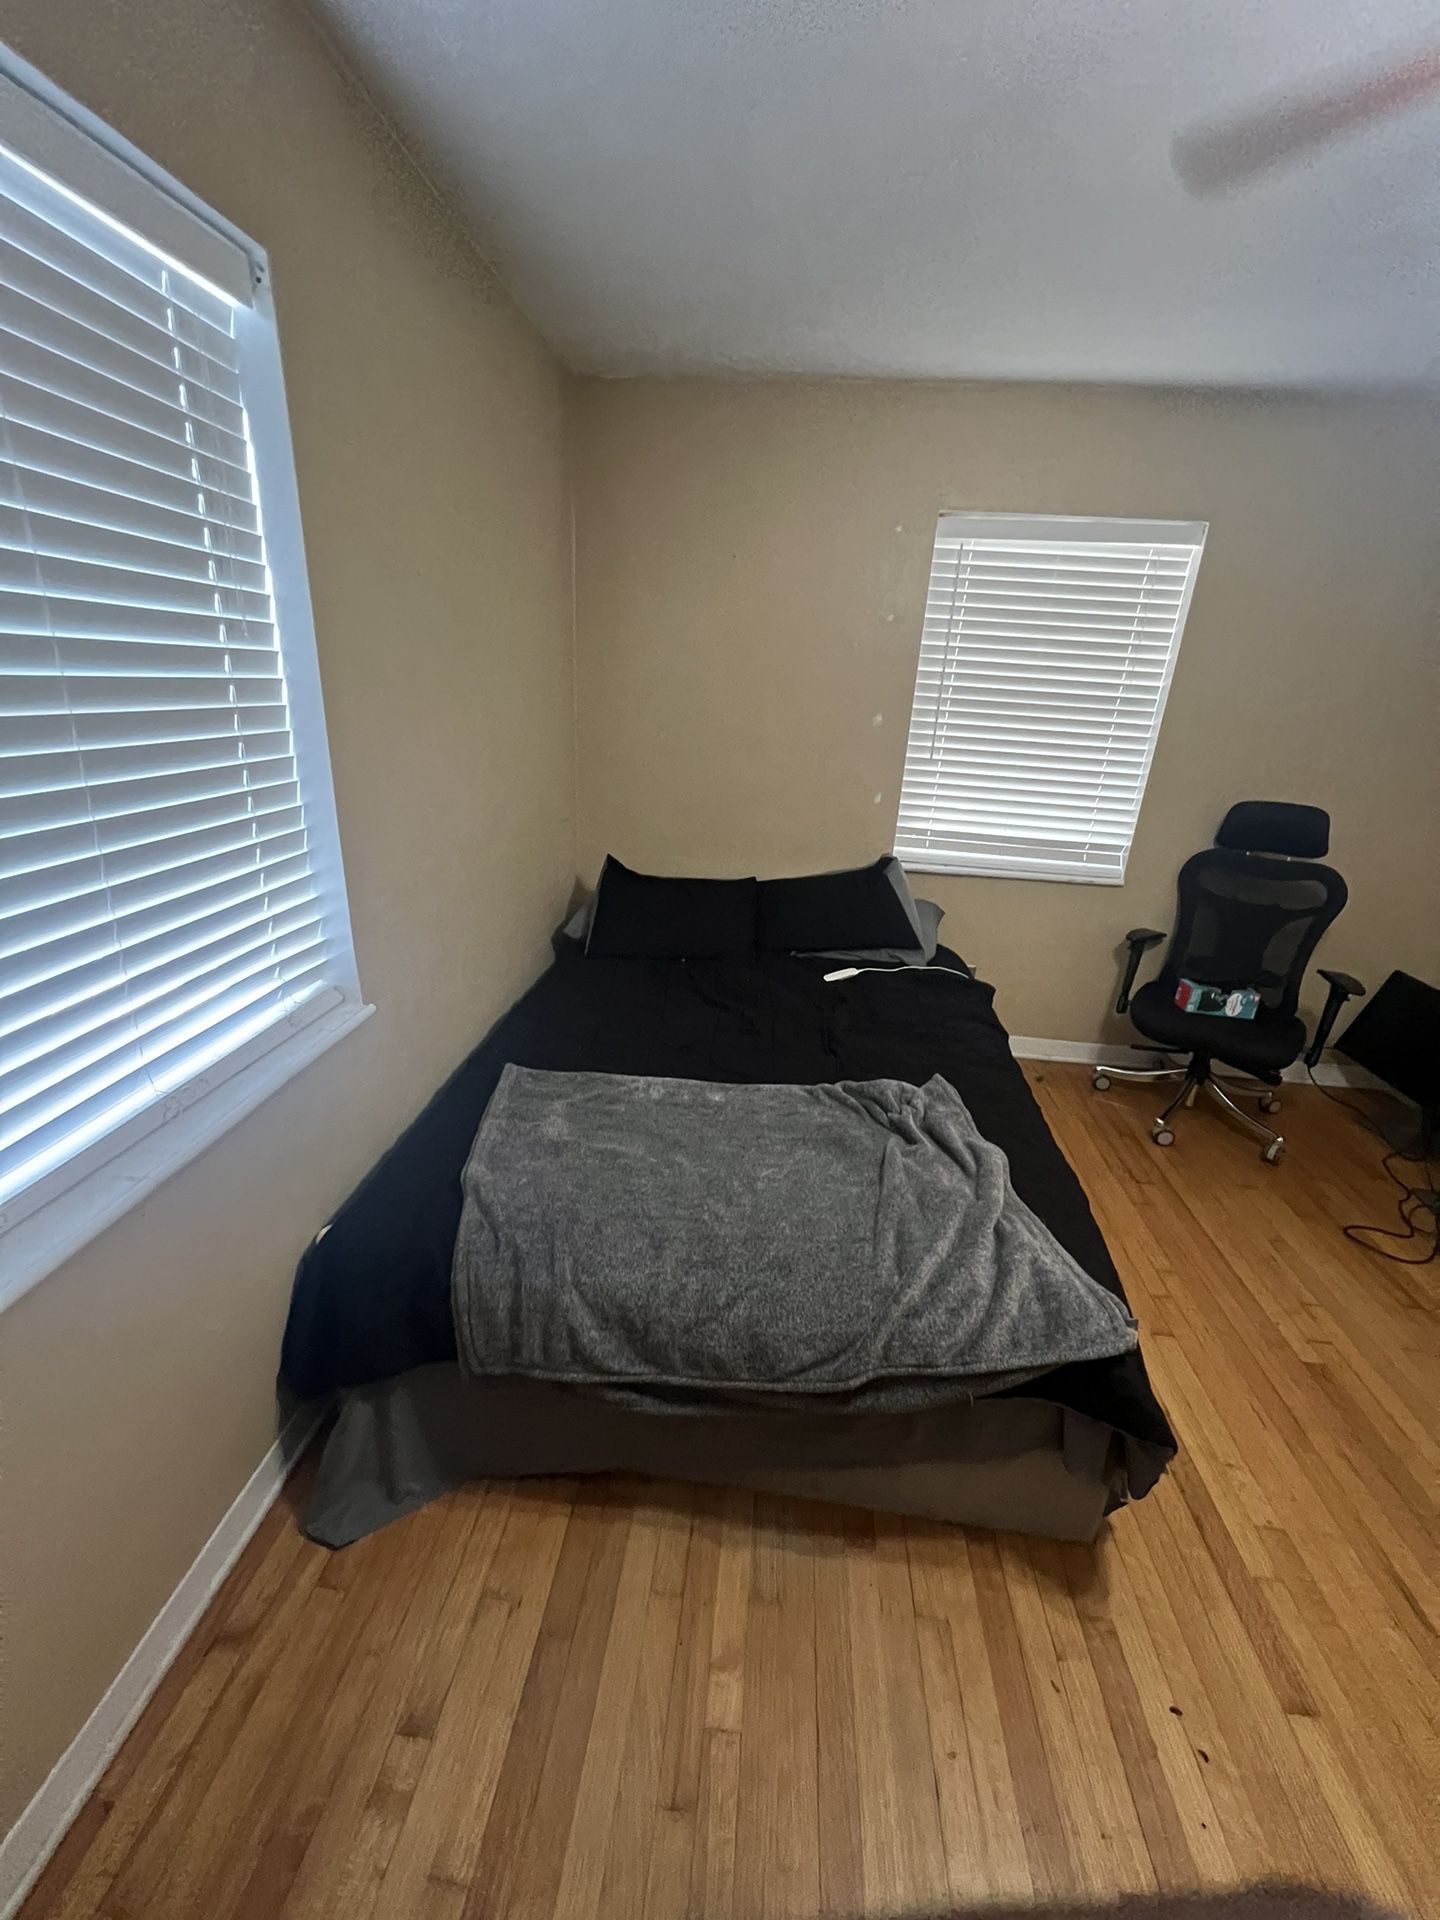 Bedroom Furniture For Sale